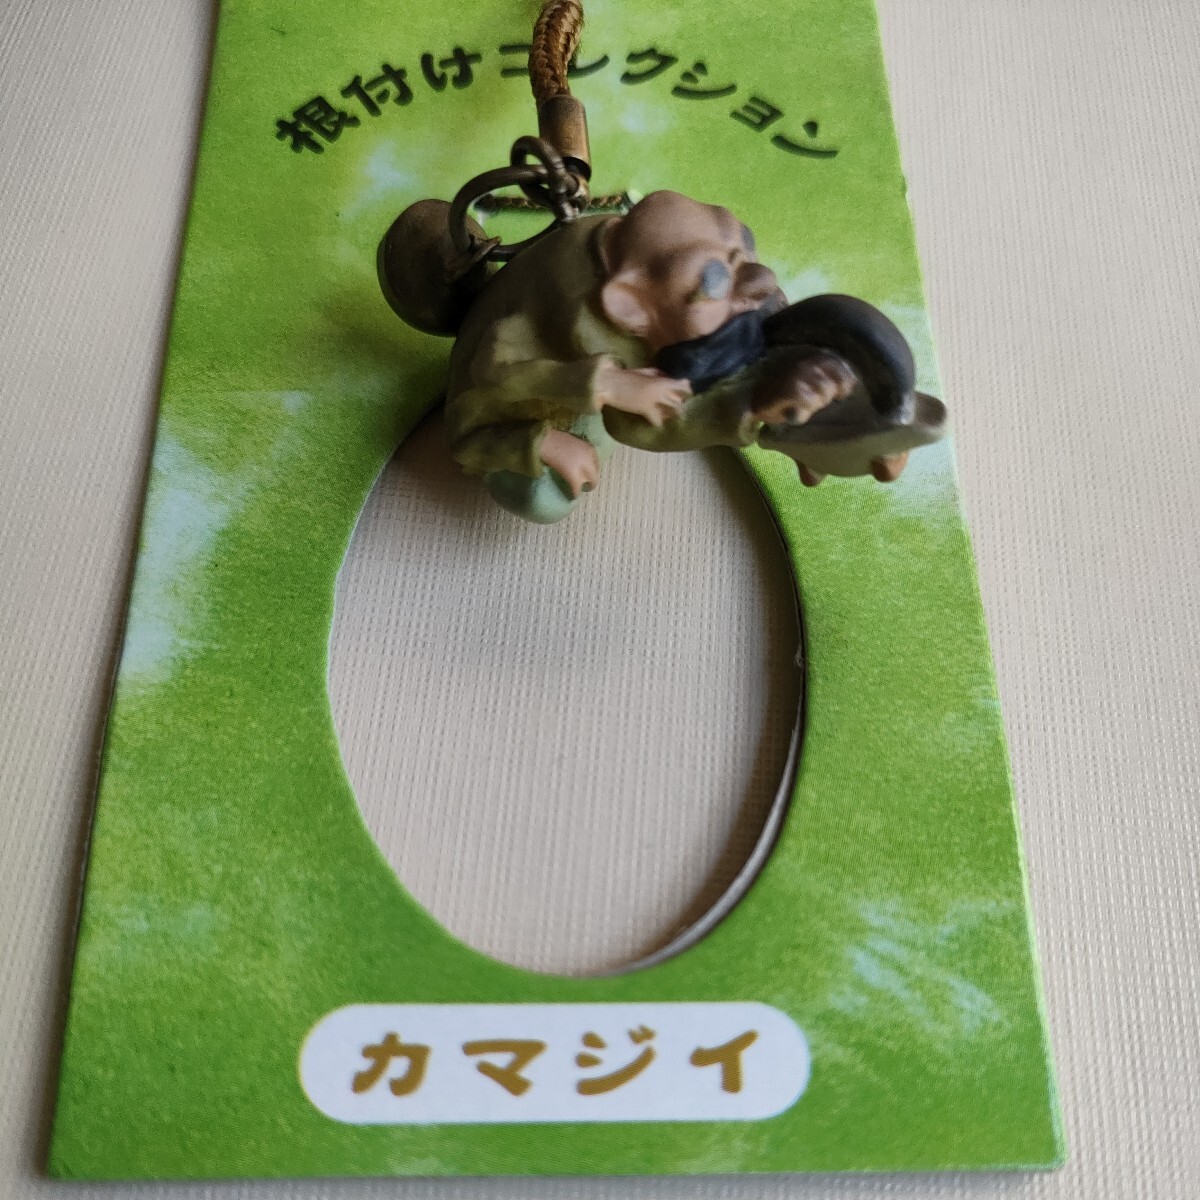 * thousand . thousand .. god ..* netsuke collection 3 kind kamajii* head * cow .*2001 rare strap key holder Ghibli 